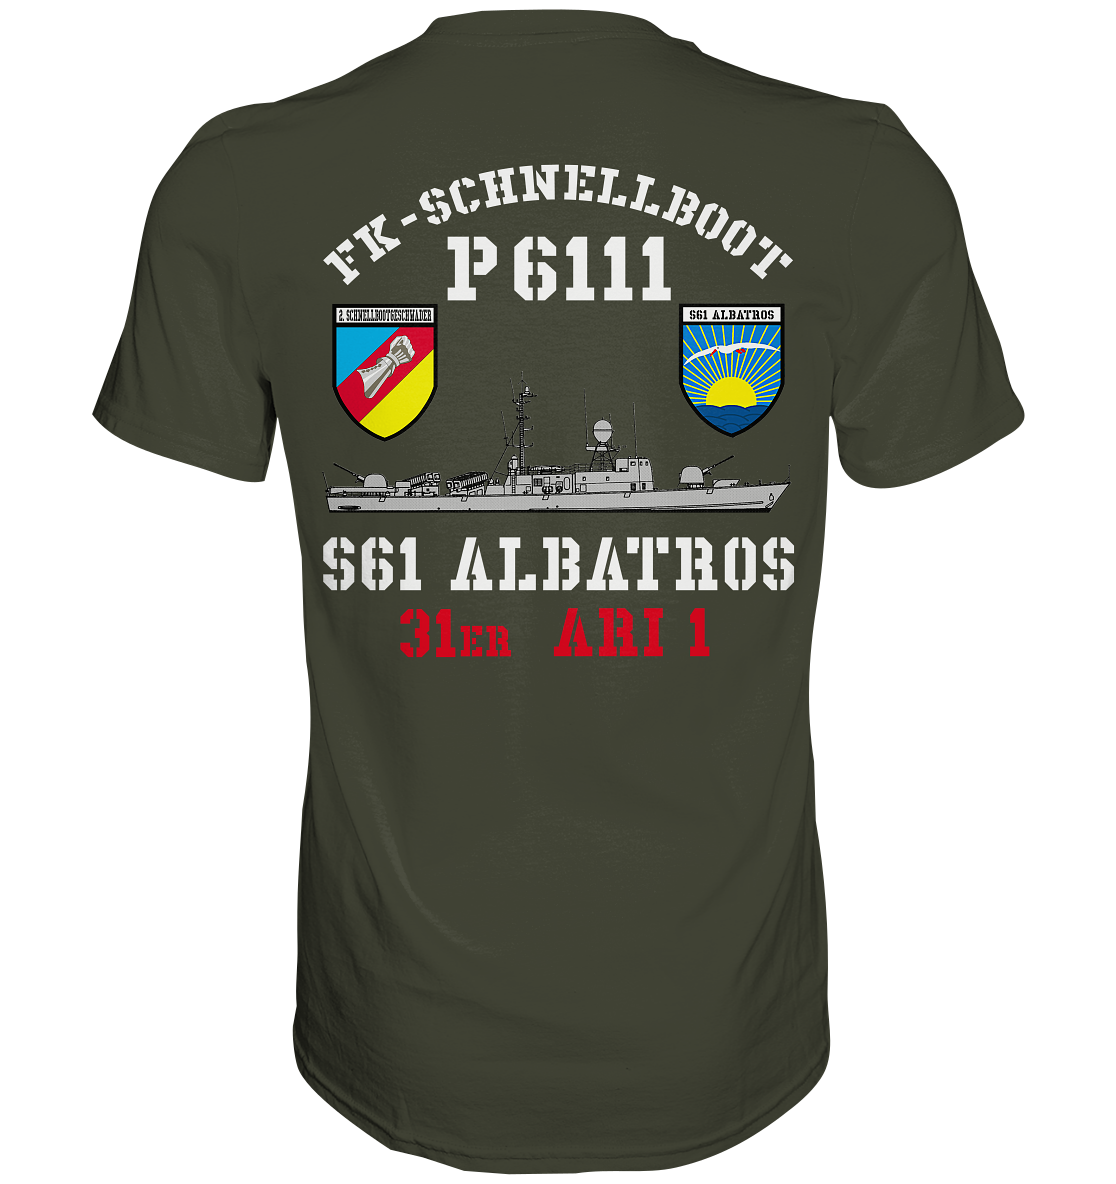 P6111 ALBATROS 31er ARI1 - Premium Shirt